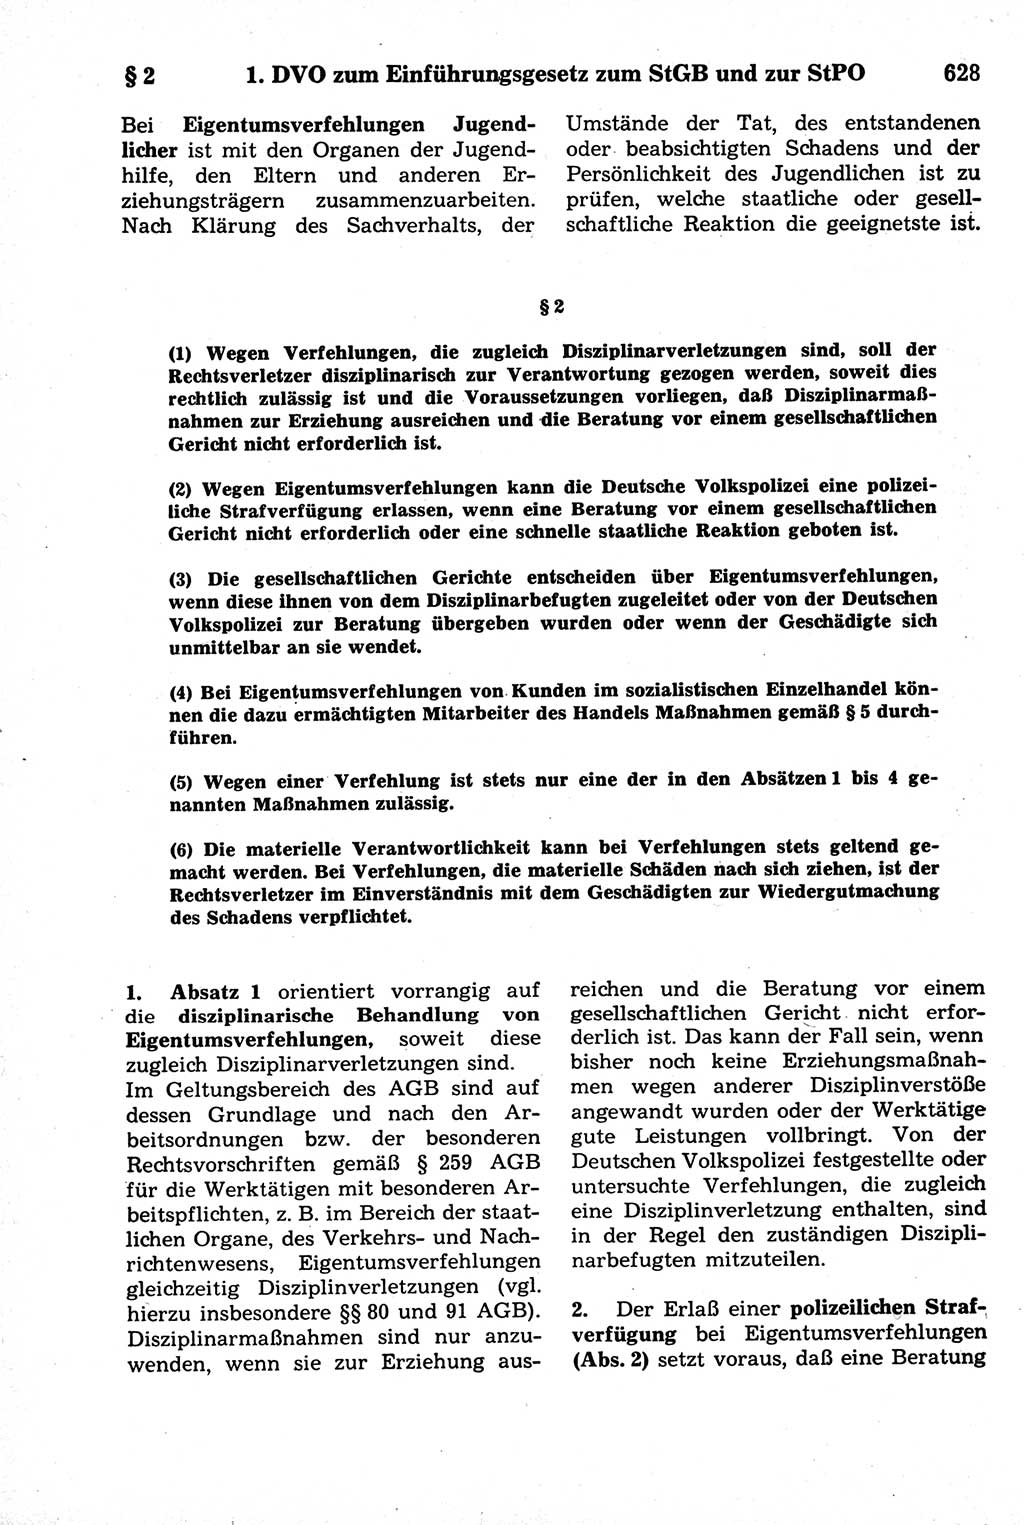 Strafrecht der Deutschen Demokratischen Republik (DDR), Kommentar zum Strafgesetzbuch (StGB) 1981, Seite 628 (Strafr. DDR Komm. StGB 1981, S. 628)